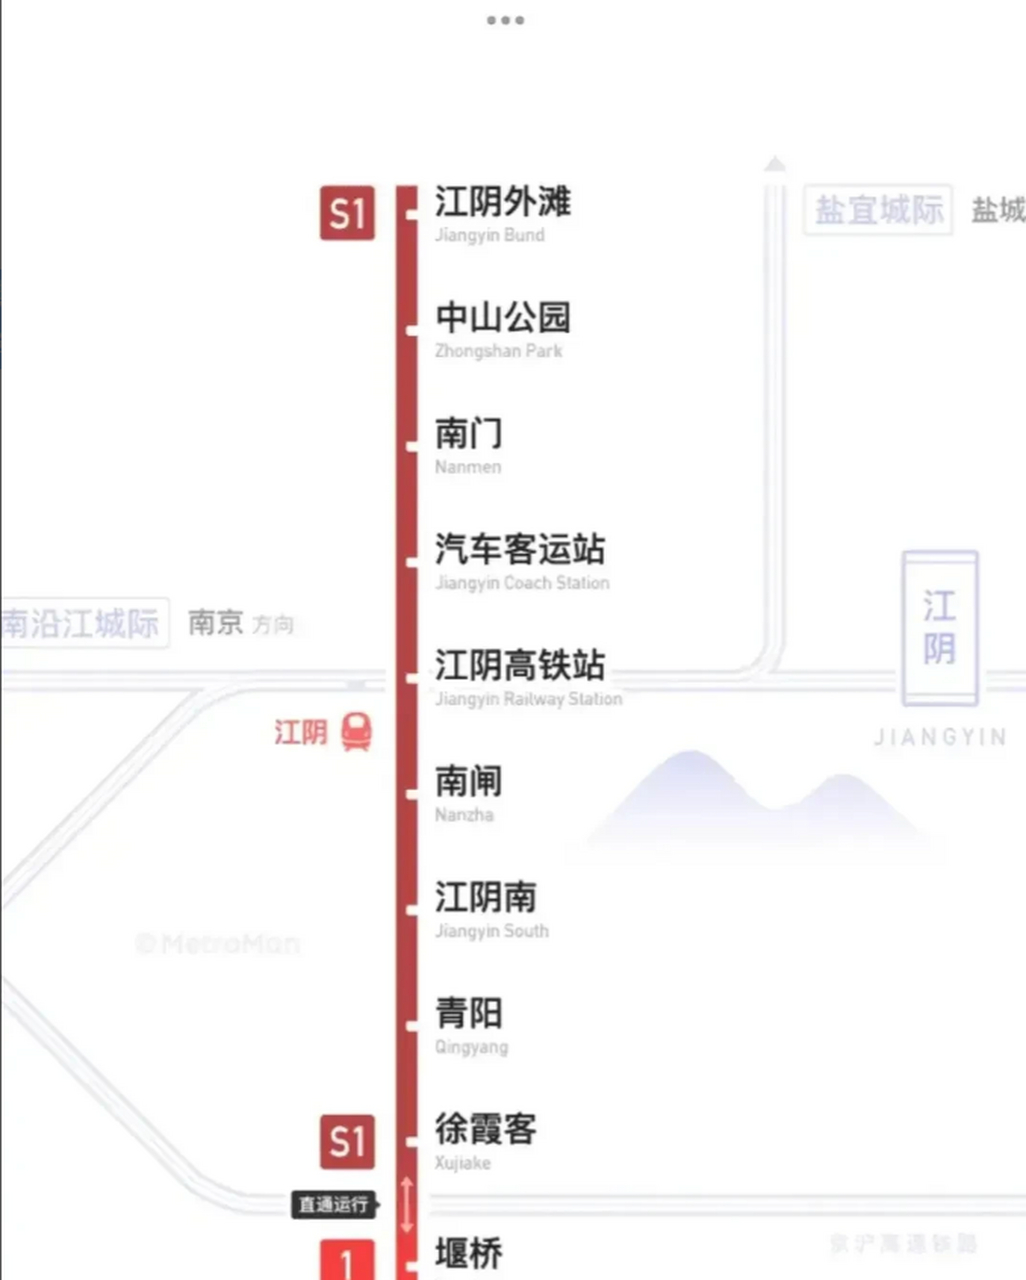 无锡地铁江阴线正式开始热滑试验,距离开通又进一步